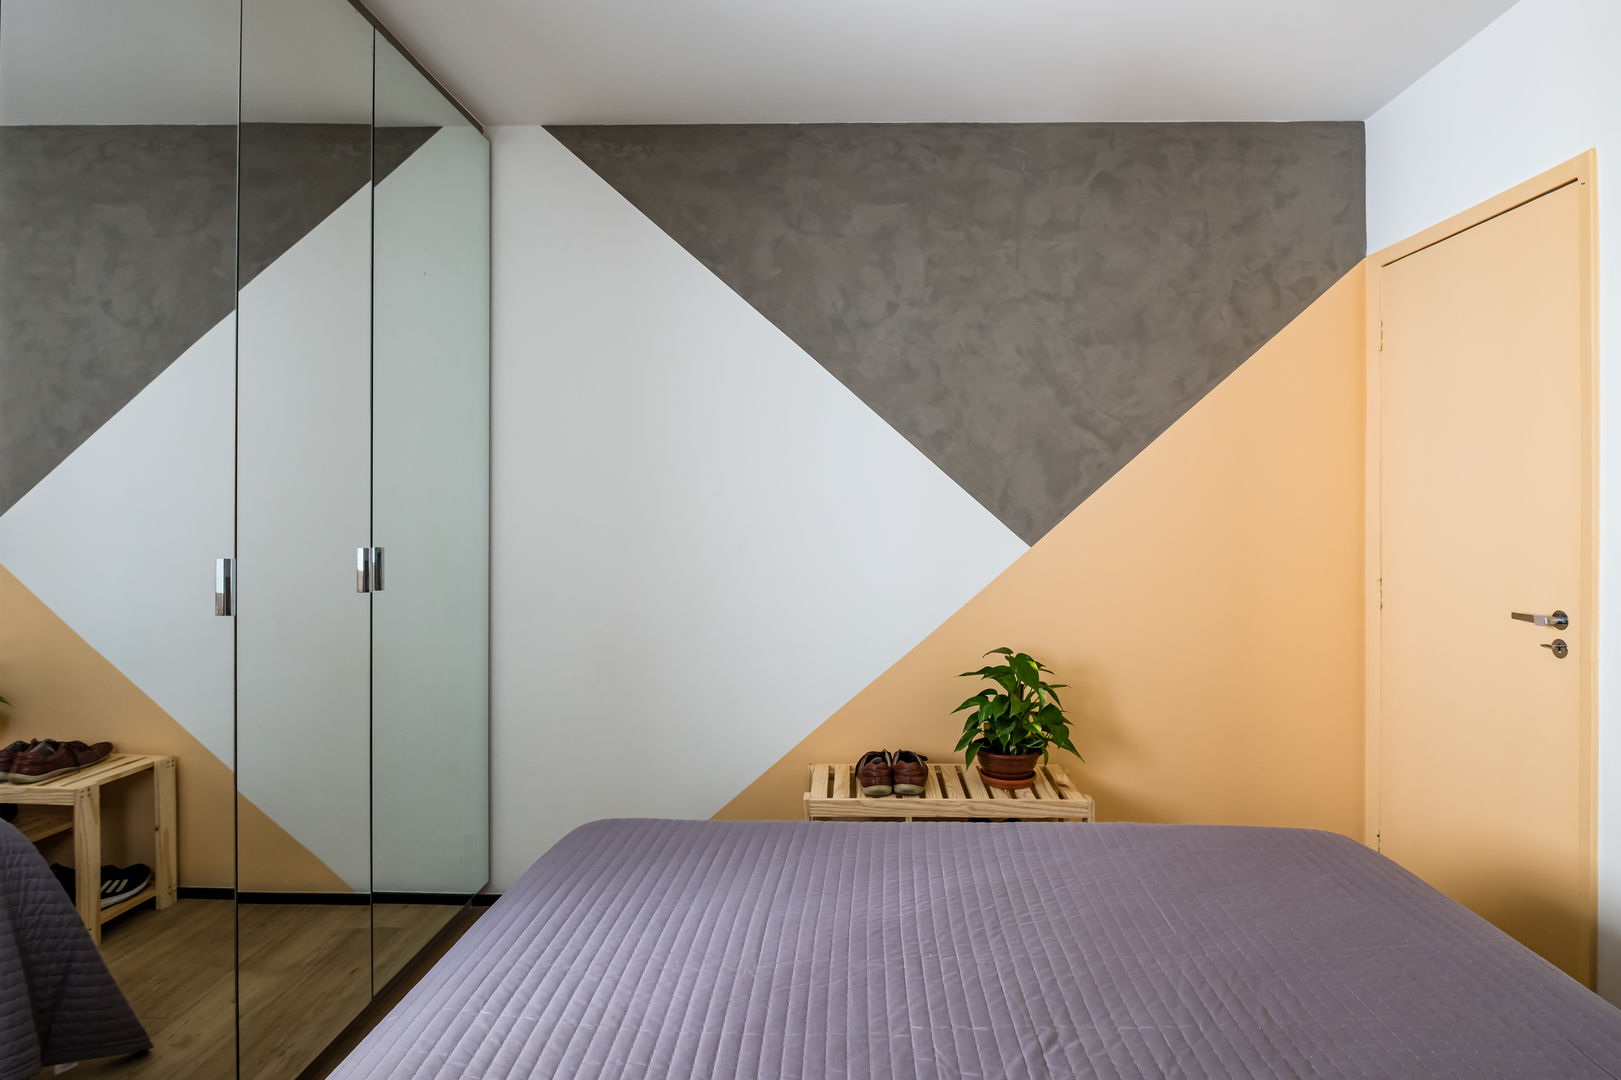 Apartamento Compacto para aluguel em tons neutros sem perder a personalidade, Studio Elã Studio Elã Small bedroom Бетон